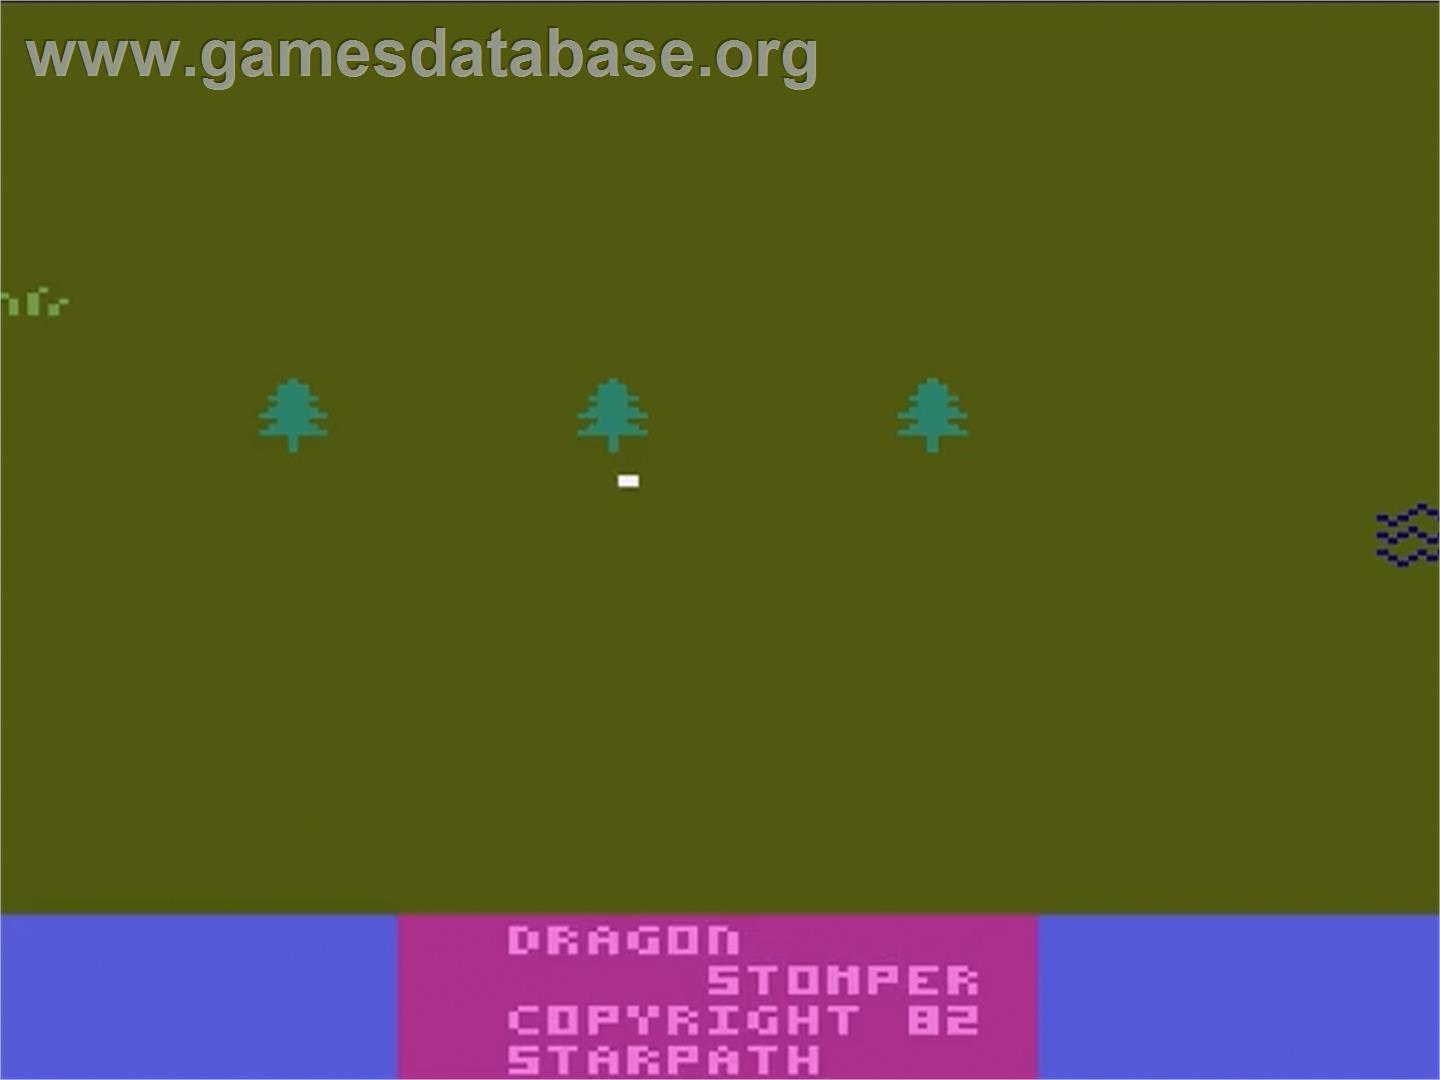 Dragonstomper - Atari 2600 - Artwork - Title Screen